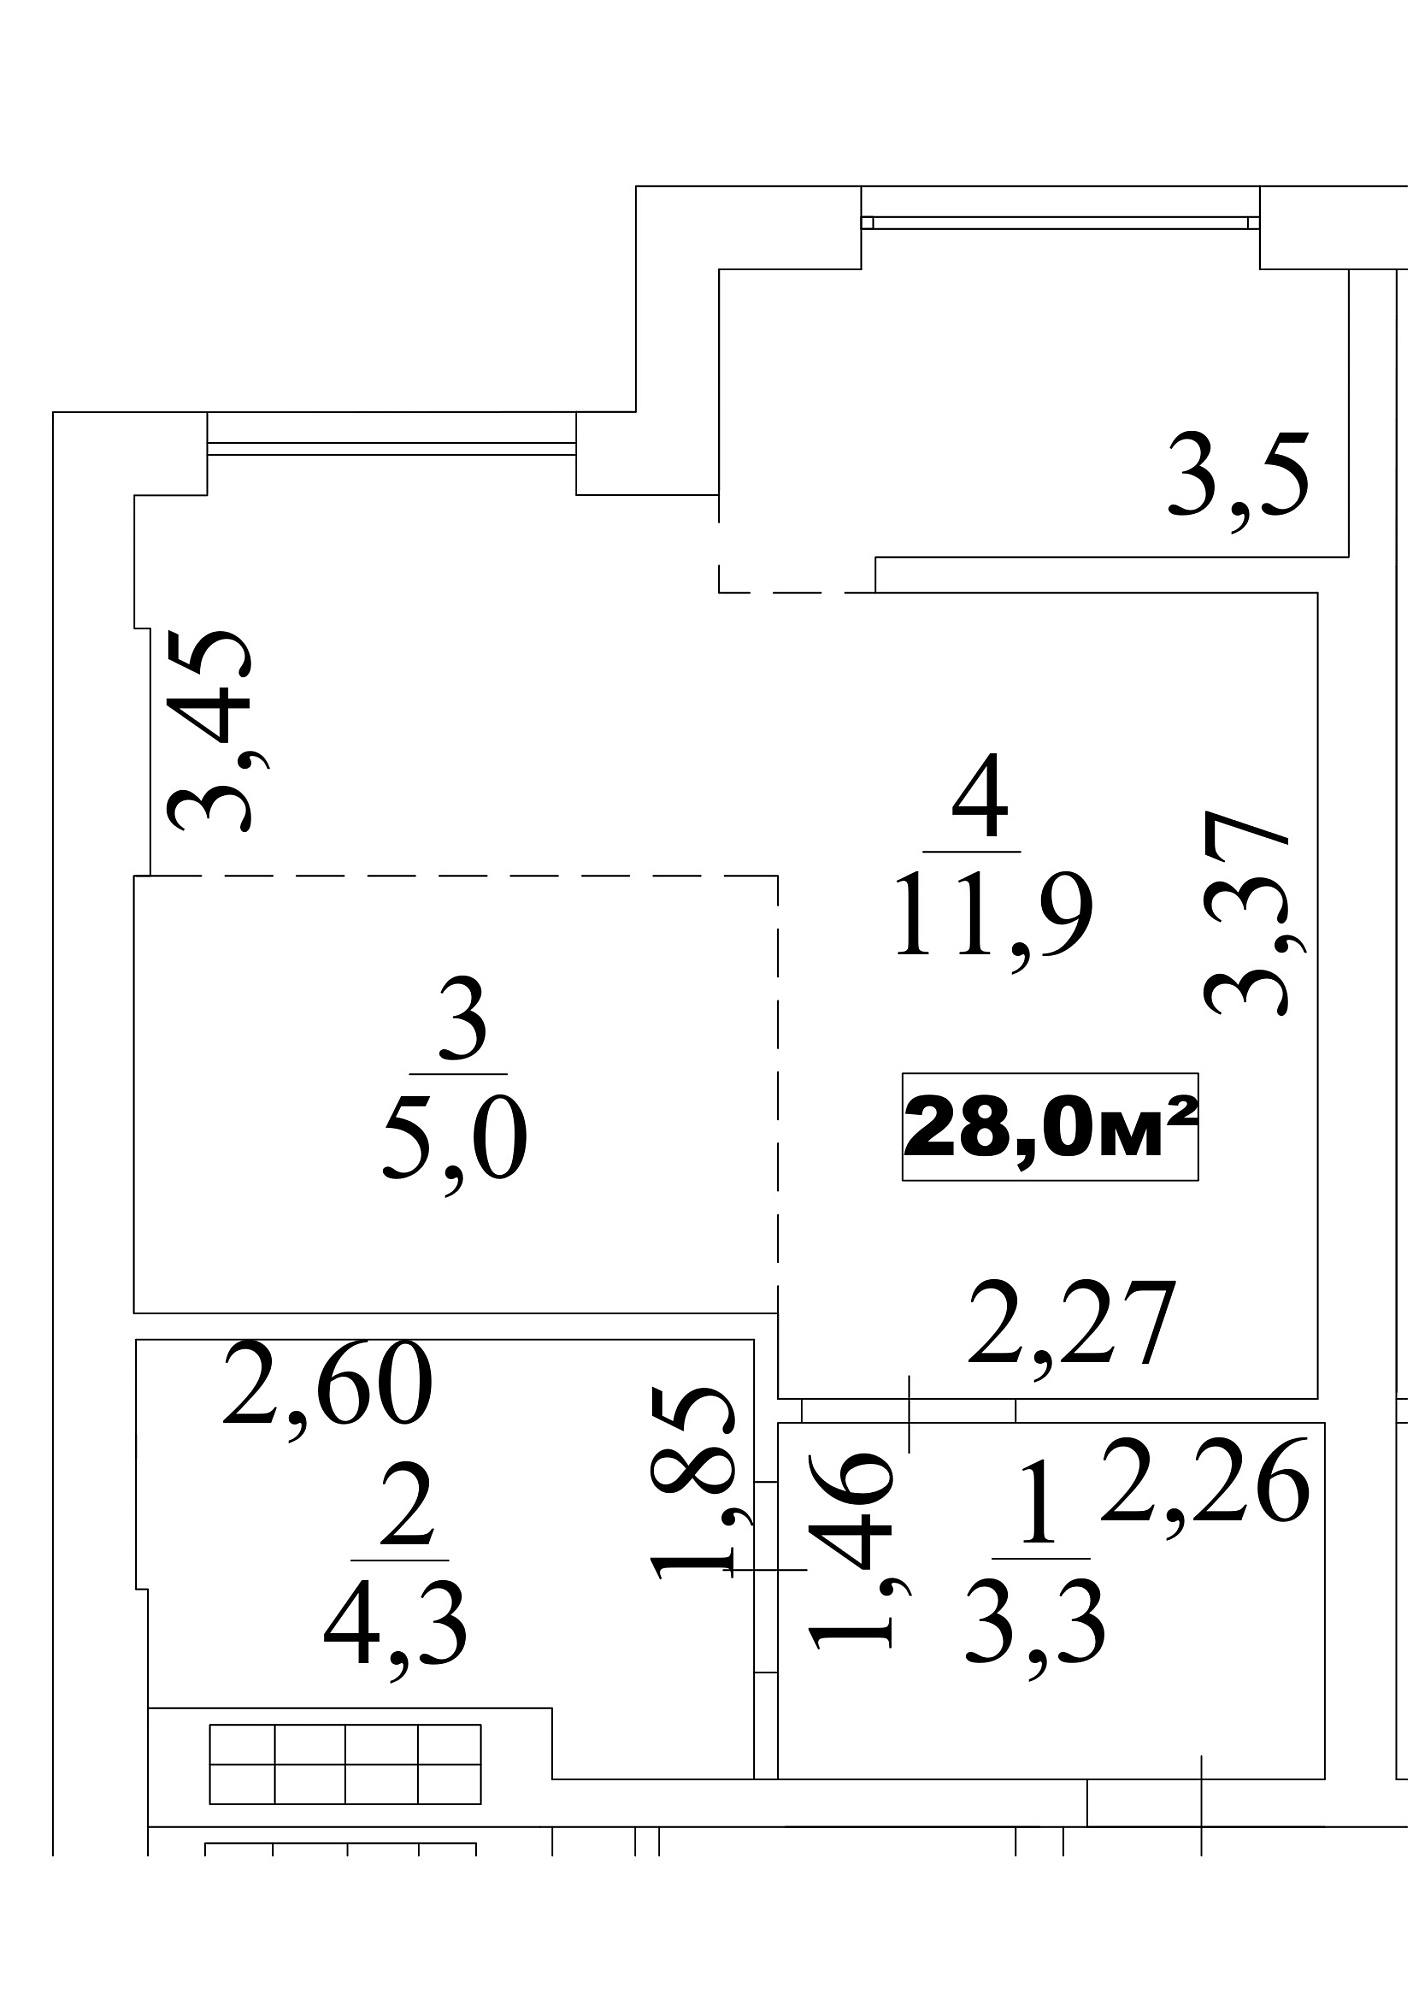 Планування Smart-квартира площею 28м2, AB-10-06/0048б.